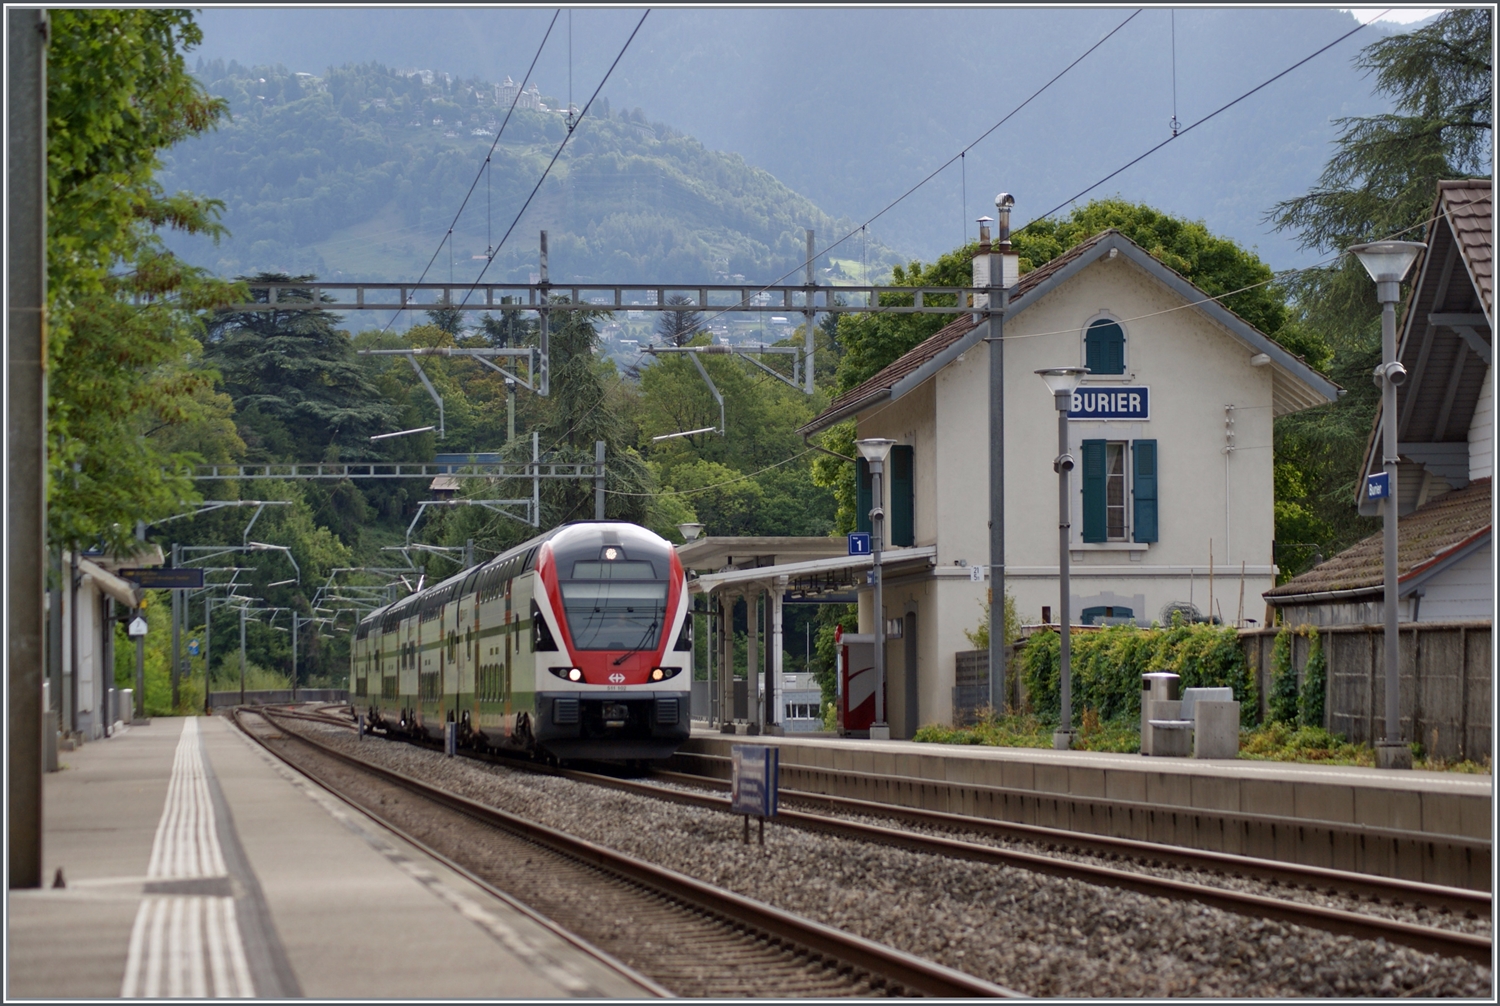 Noch einmal zwei Bilder vom  romantischen  Bahnhof Burier, welcher von dieser Seite her wirklich noch etwas wohltuende Nostalgie ausstrahlt. Selbst das Bahnsteigdach steht noch. Am Bahnsteig zu sehen, der SBB RABe 511 102 auf der Fahrt in Richtung Lausanne. 

7. Sept. 2022